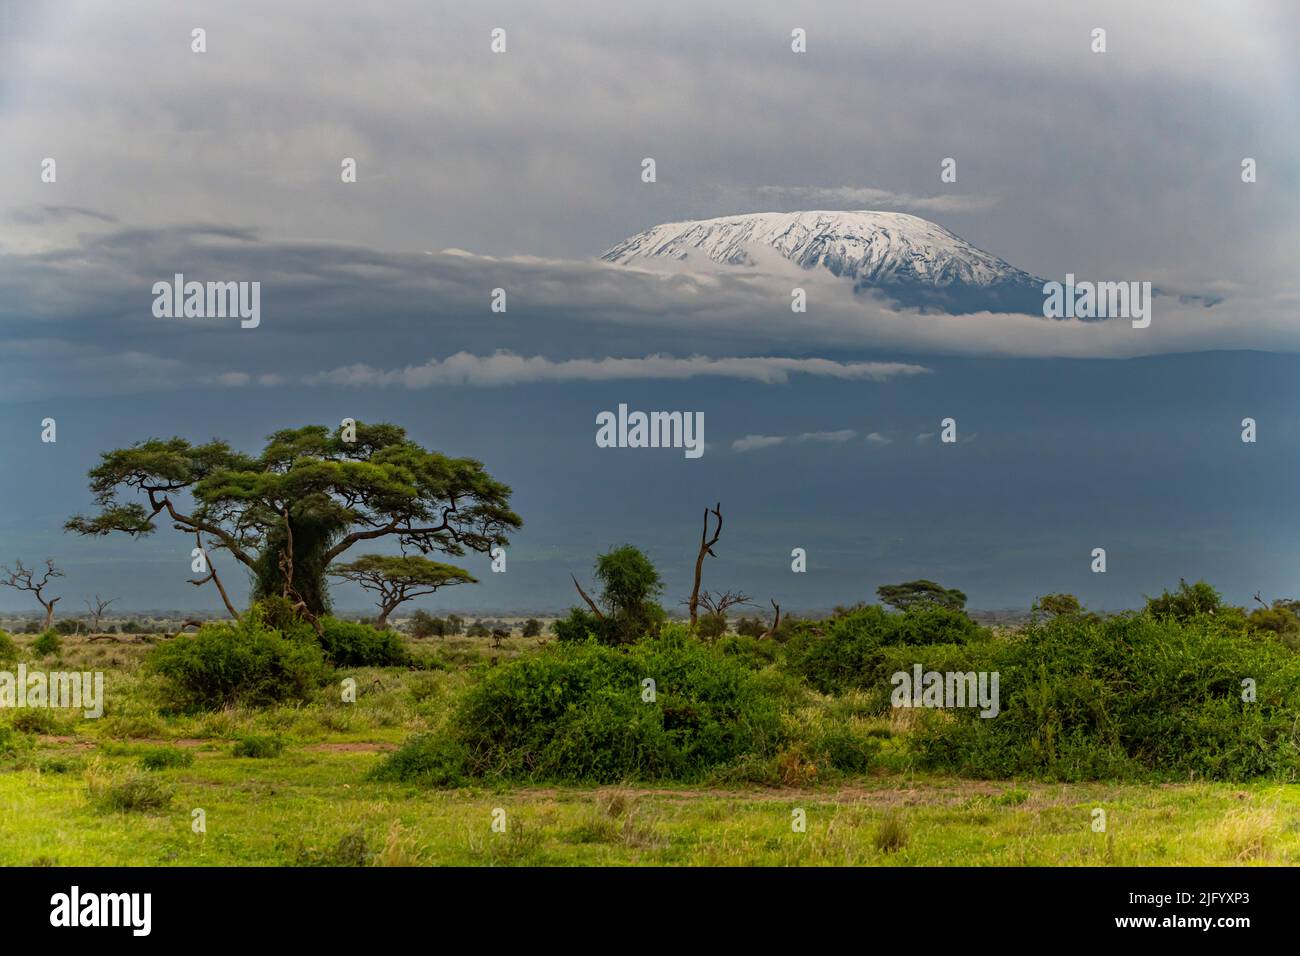 Mount Kilimanjaro, Amboseli National Park, Kenya, East Africa, Africa Stock Photo